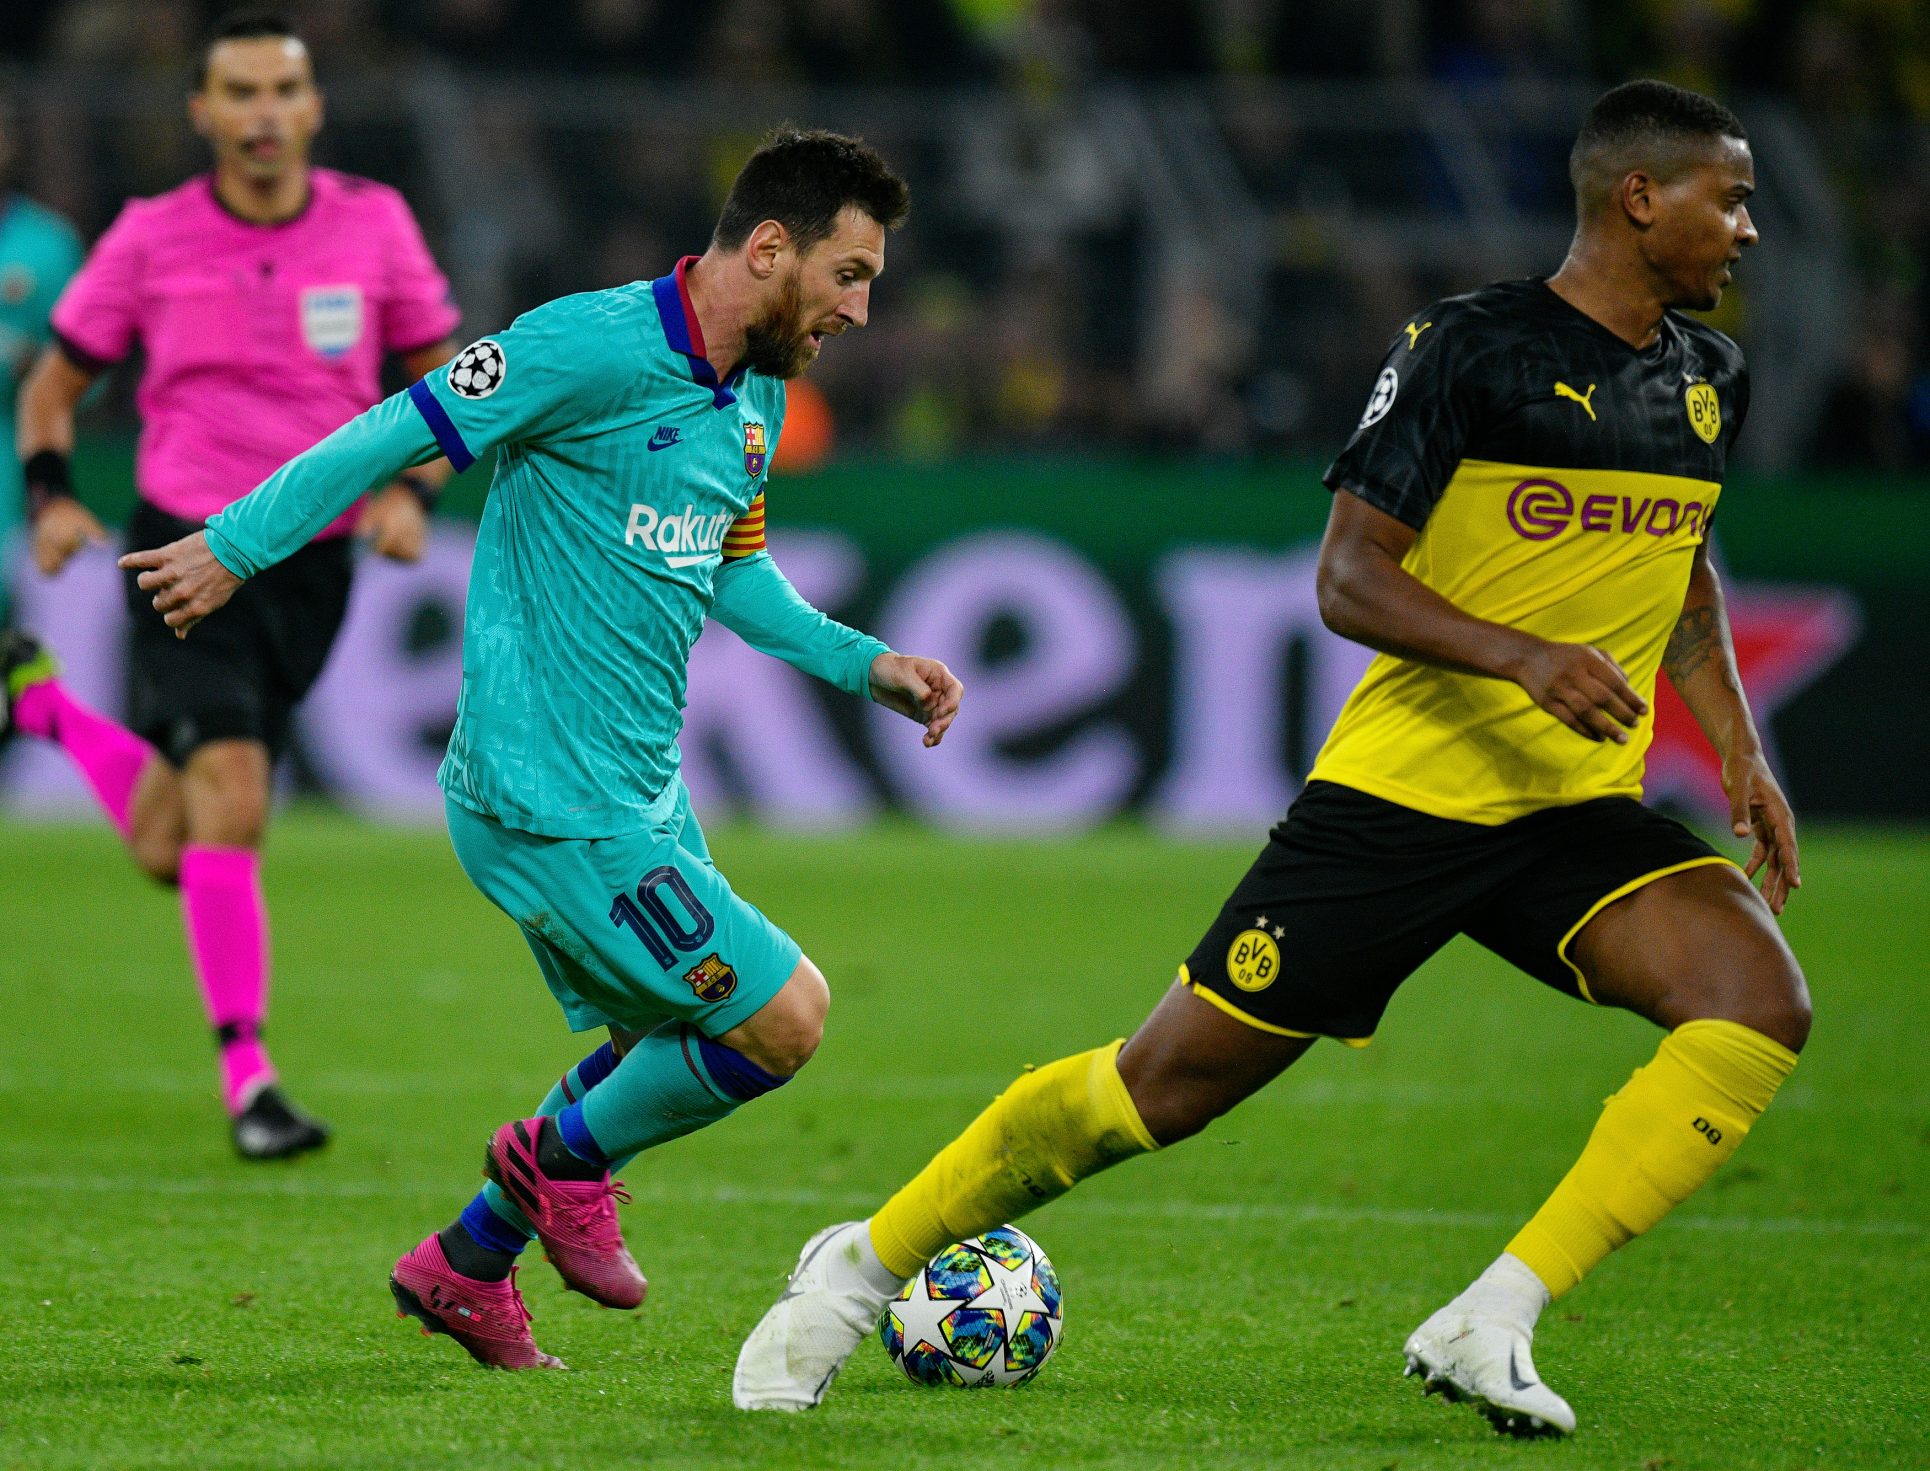 Barcelona con gris empate 0-0 en Dortmund en regreso de Messi